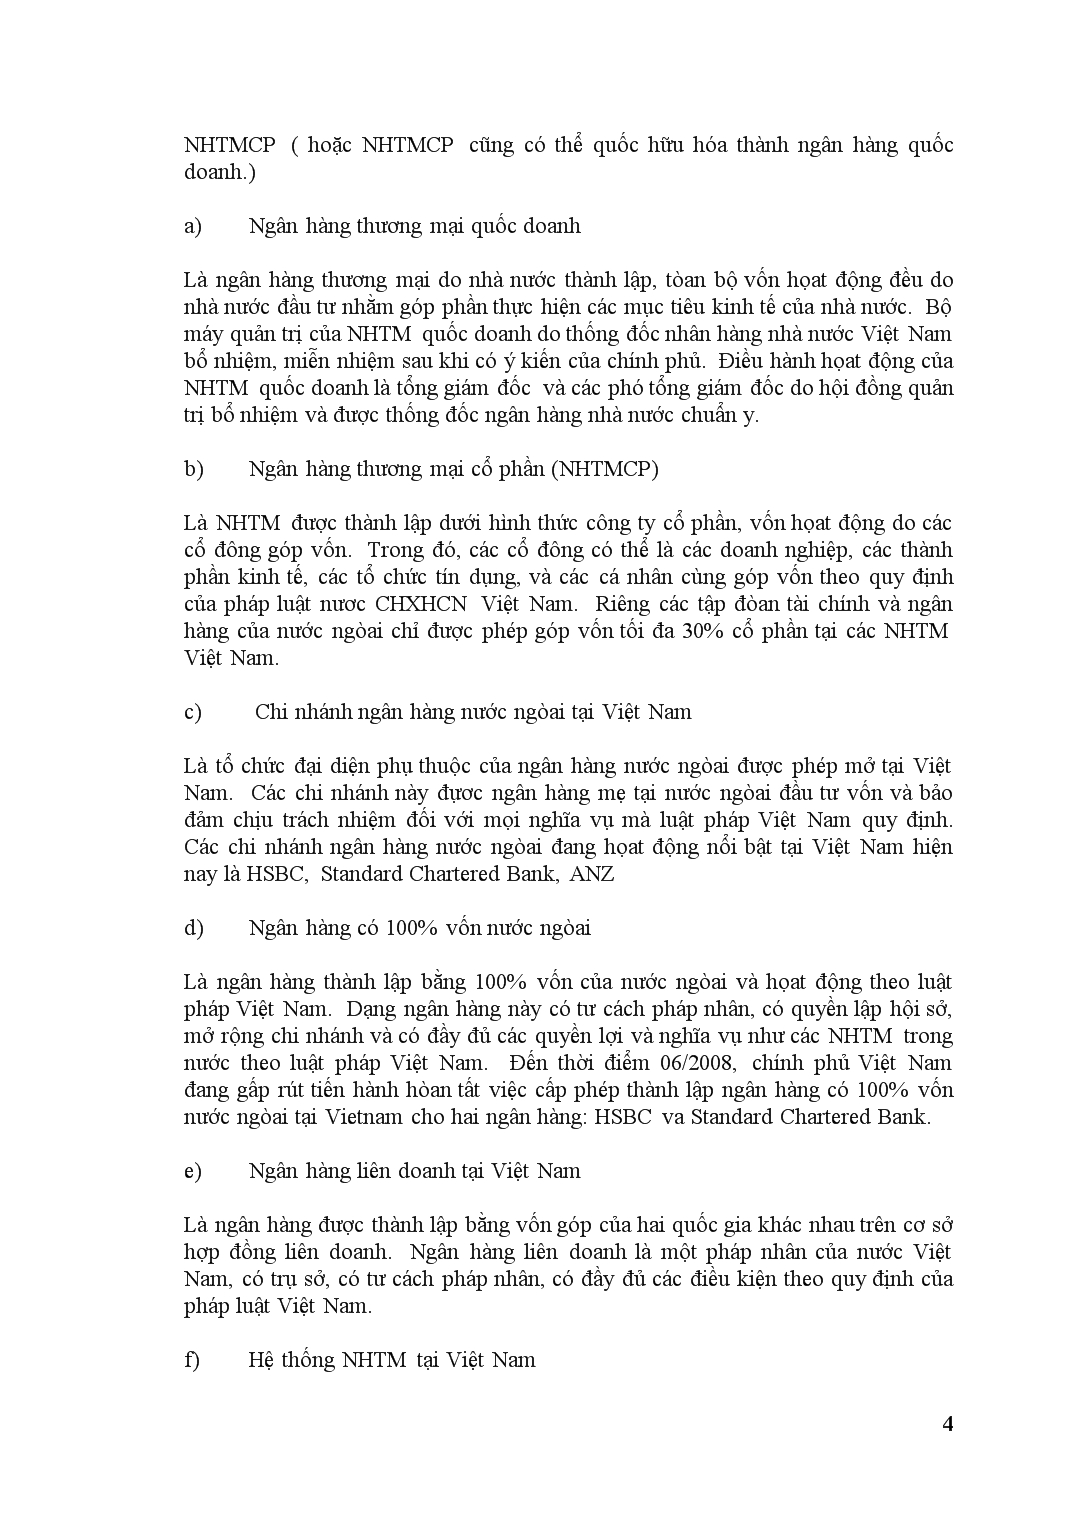 Luận văn So sánh, phân tích hoạt động bán lẻ giữa ACB và HSBC Việt Nam trang 4